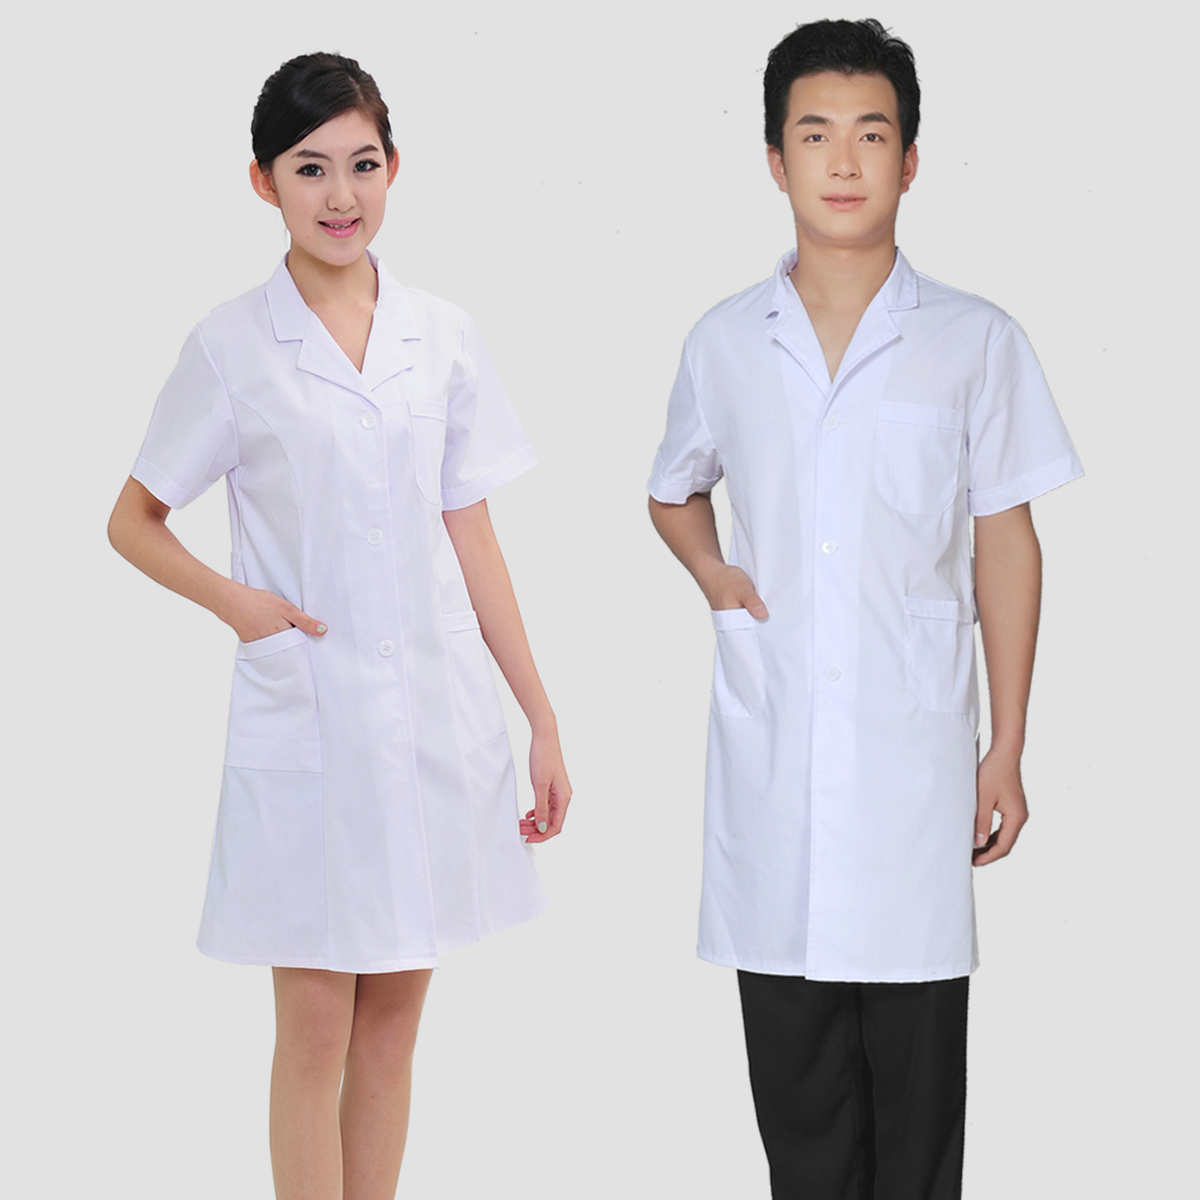 Đồng phục bệnh viện áo blouse dành cho bác sĩ nam và nữ